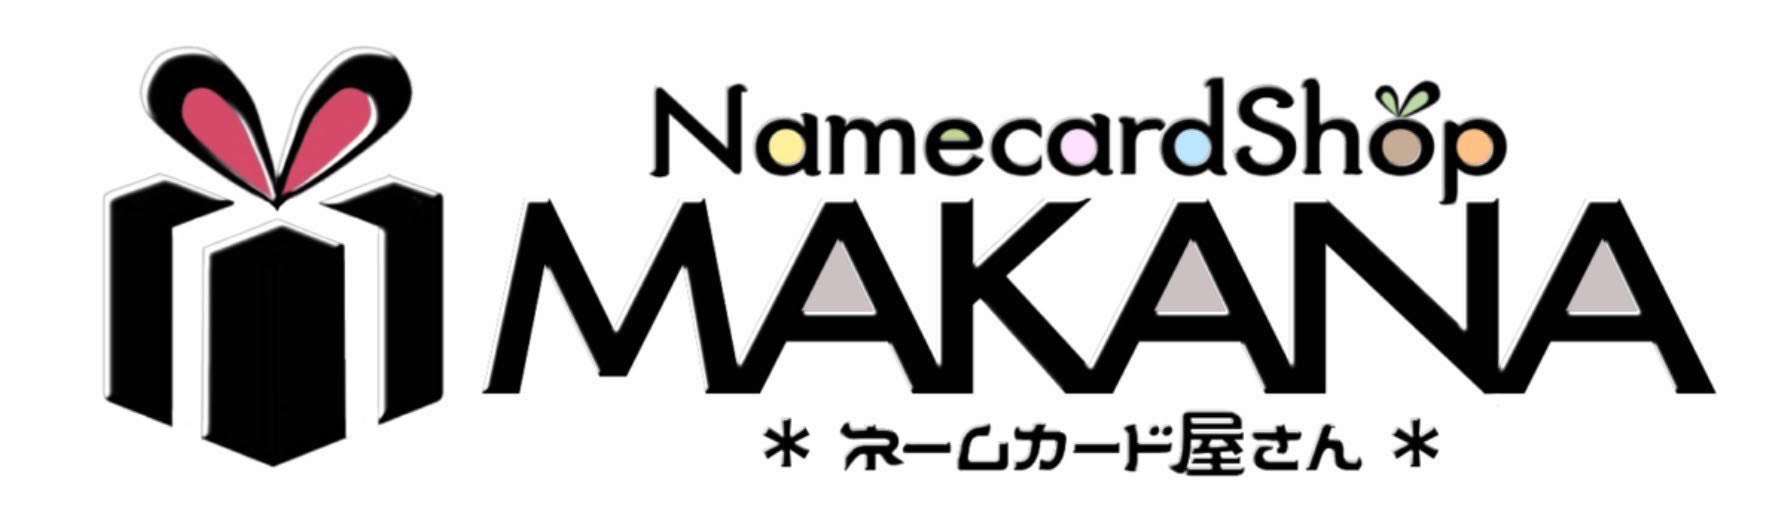 NamecardShop MAKANA ロゴ